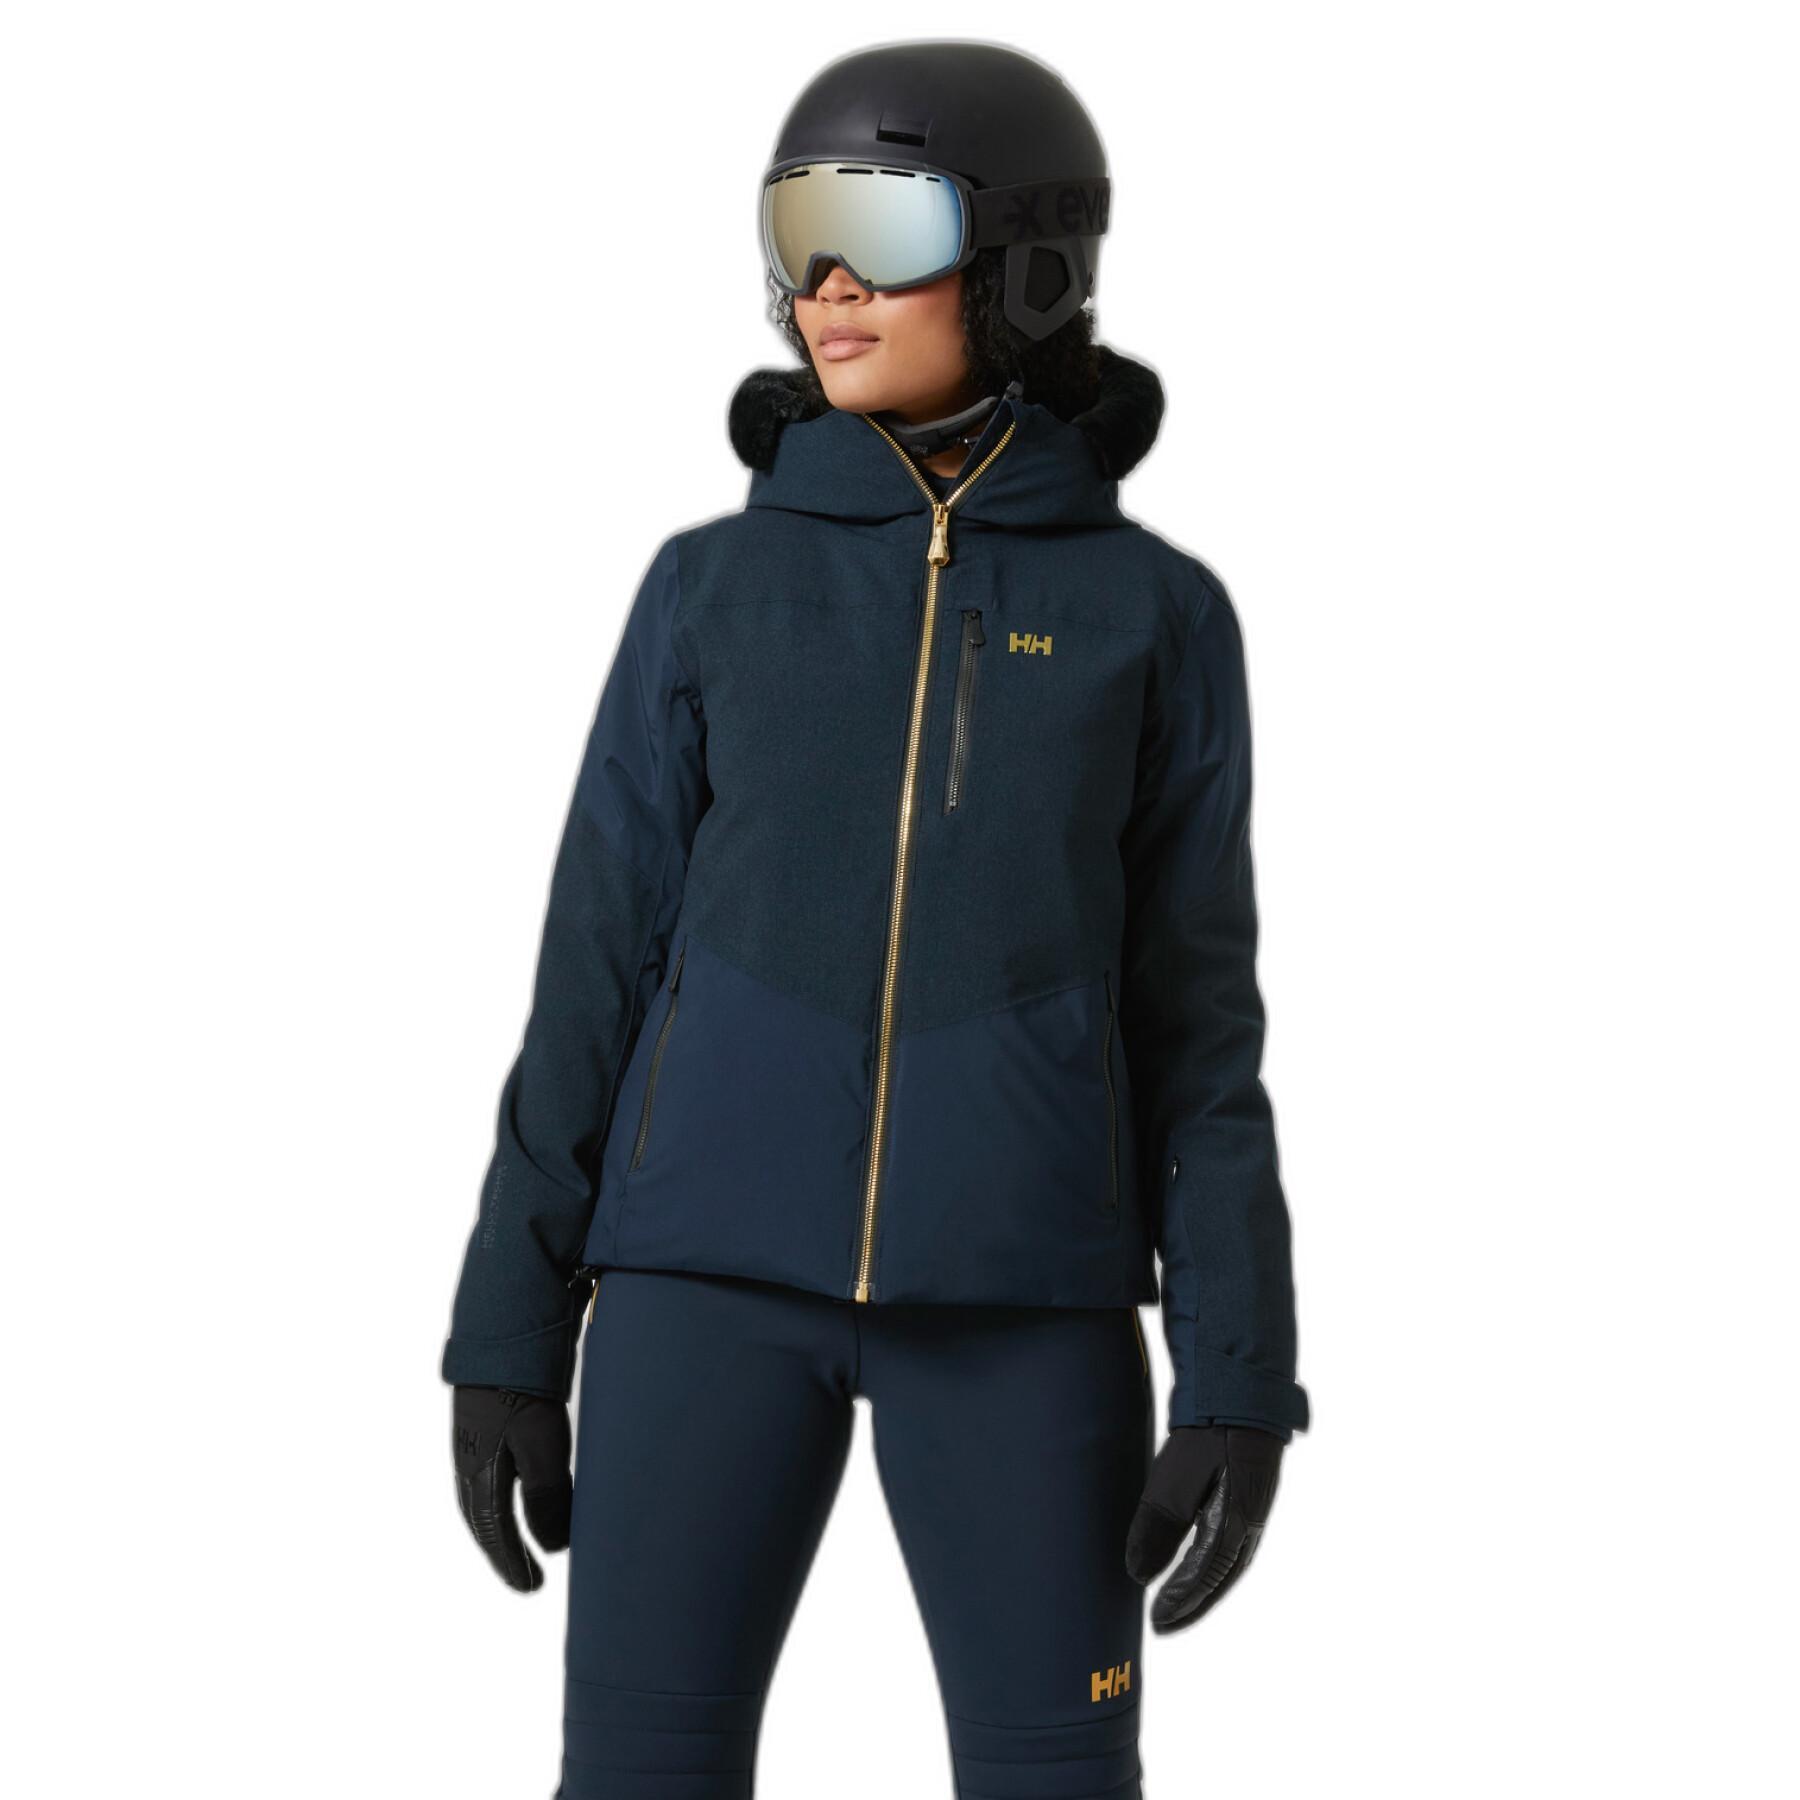 Women's ski jacket Helly Hansen Valdisere 2.0